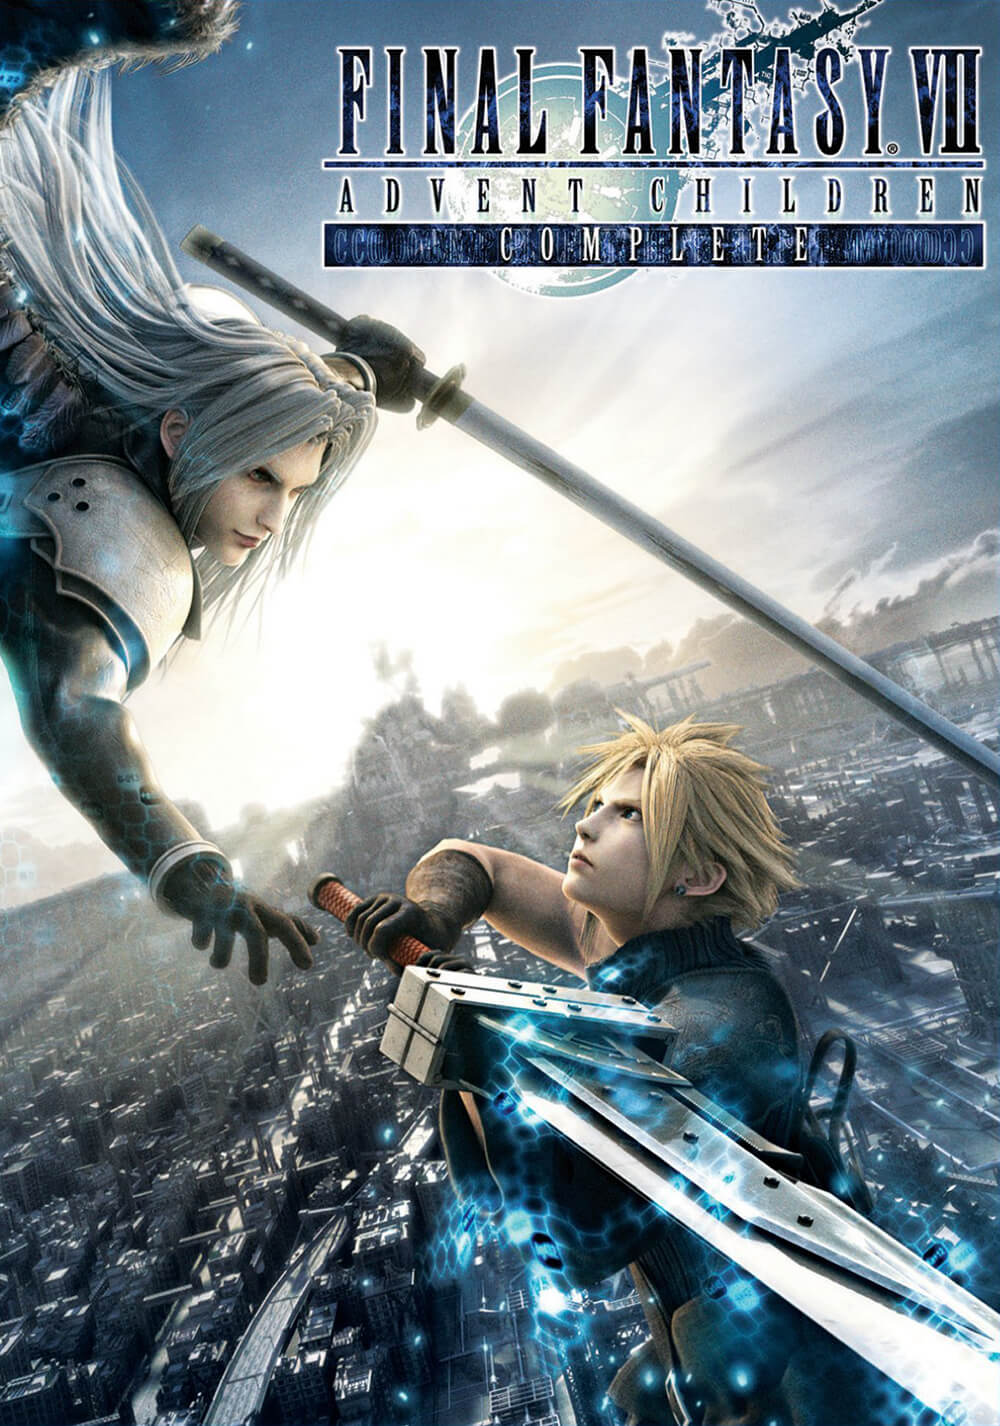 فاینال فانتزی ۷: ظهور کودکان (Final Fantasy VII: Advent Children)